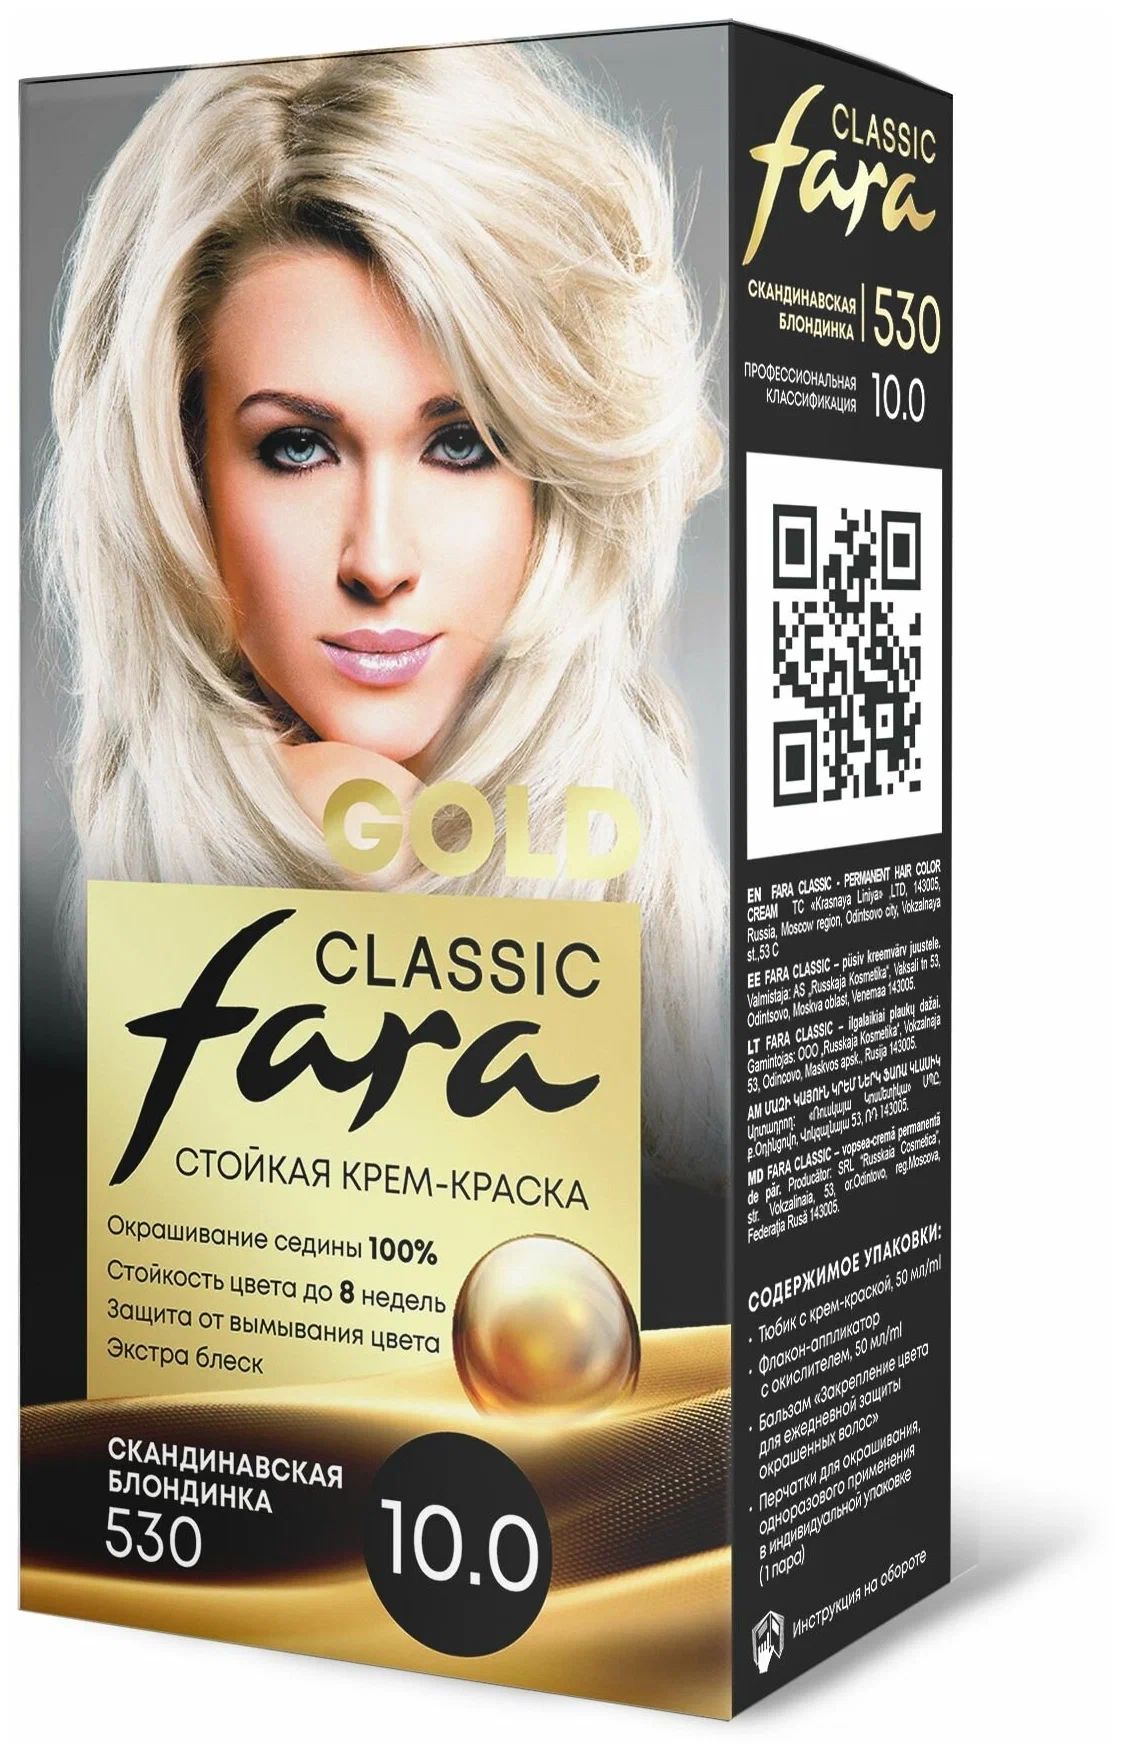 Крем-краска для волос Fara Classic Gold 530 скандинавская блондинка 10.0, 140 г младоформалисты русская проза